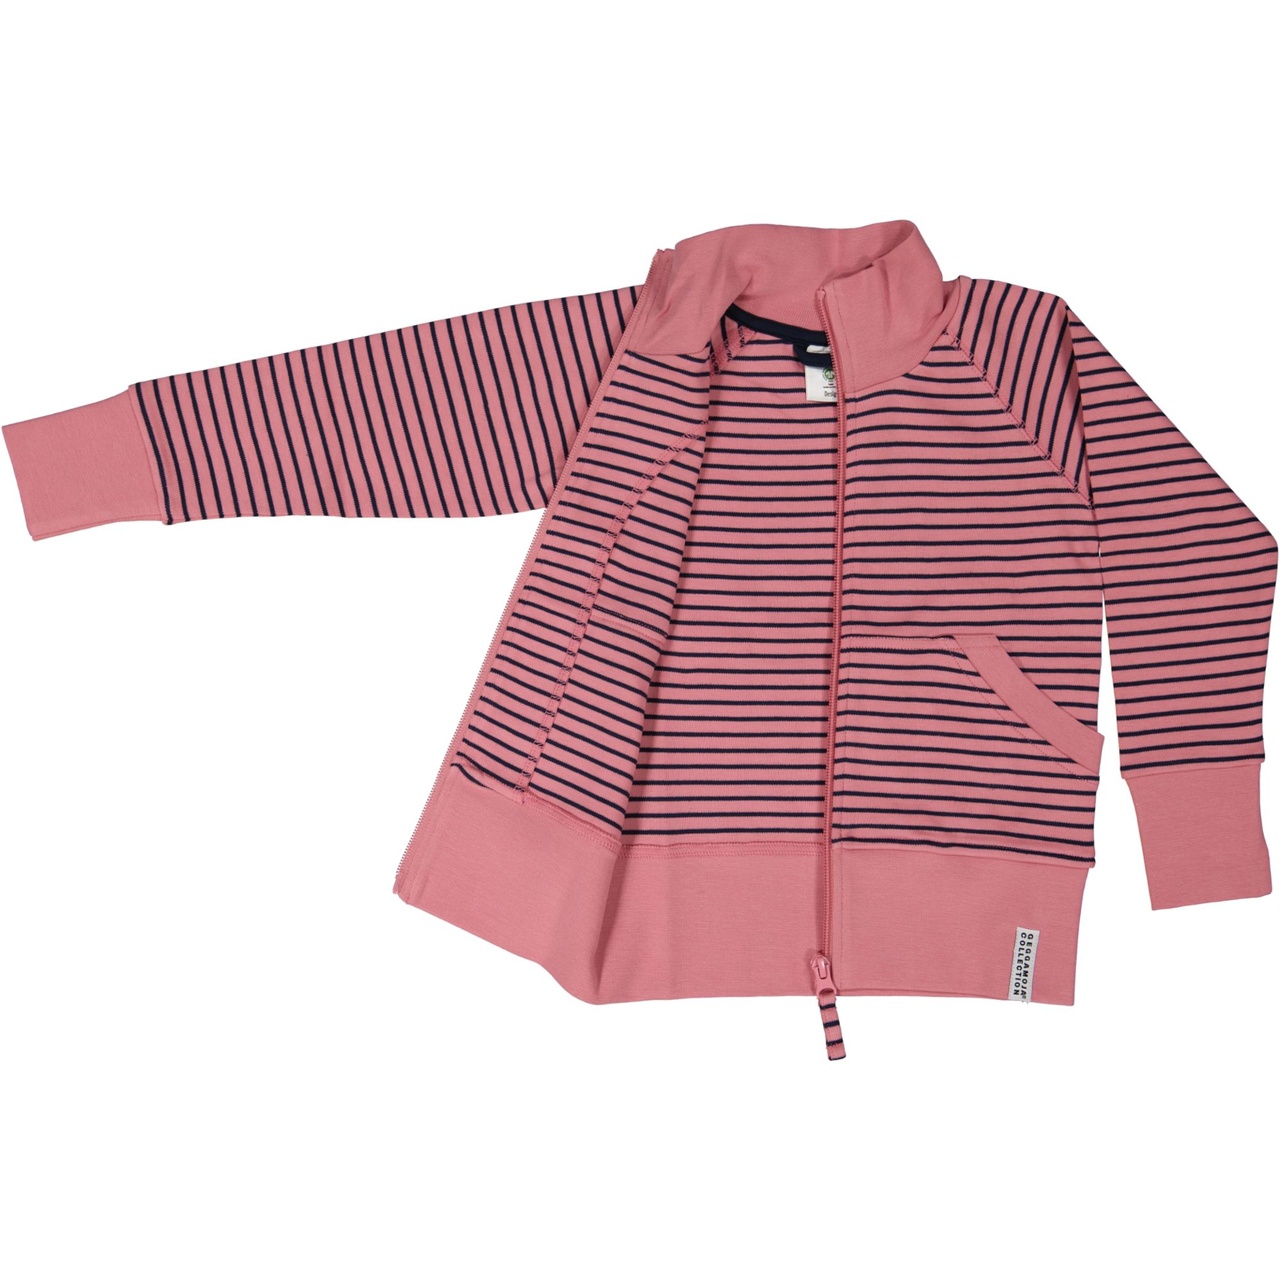 Zip sweater Pink/navy